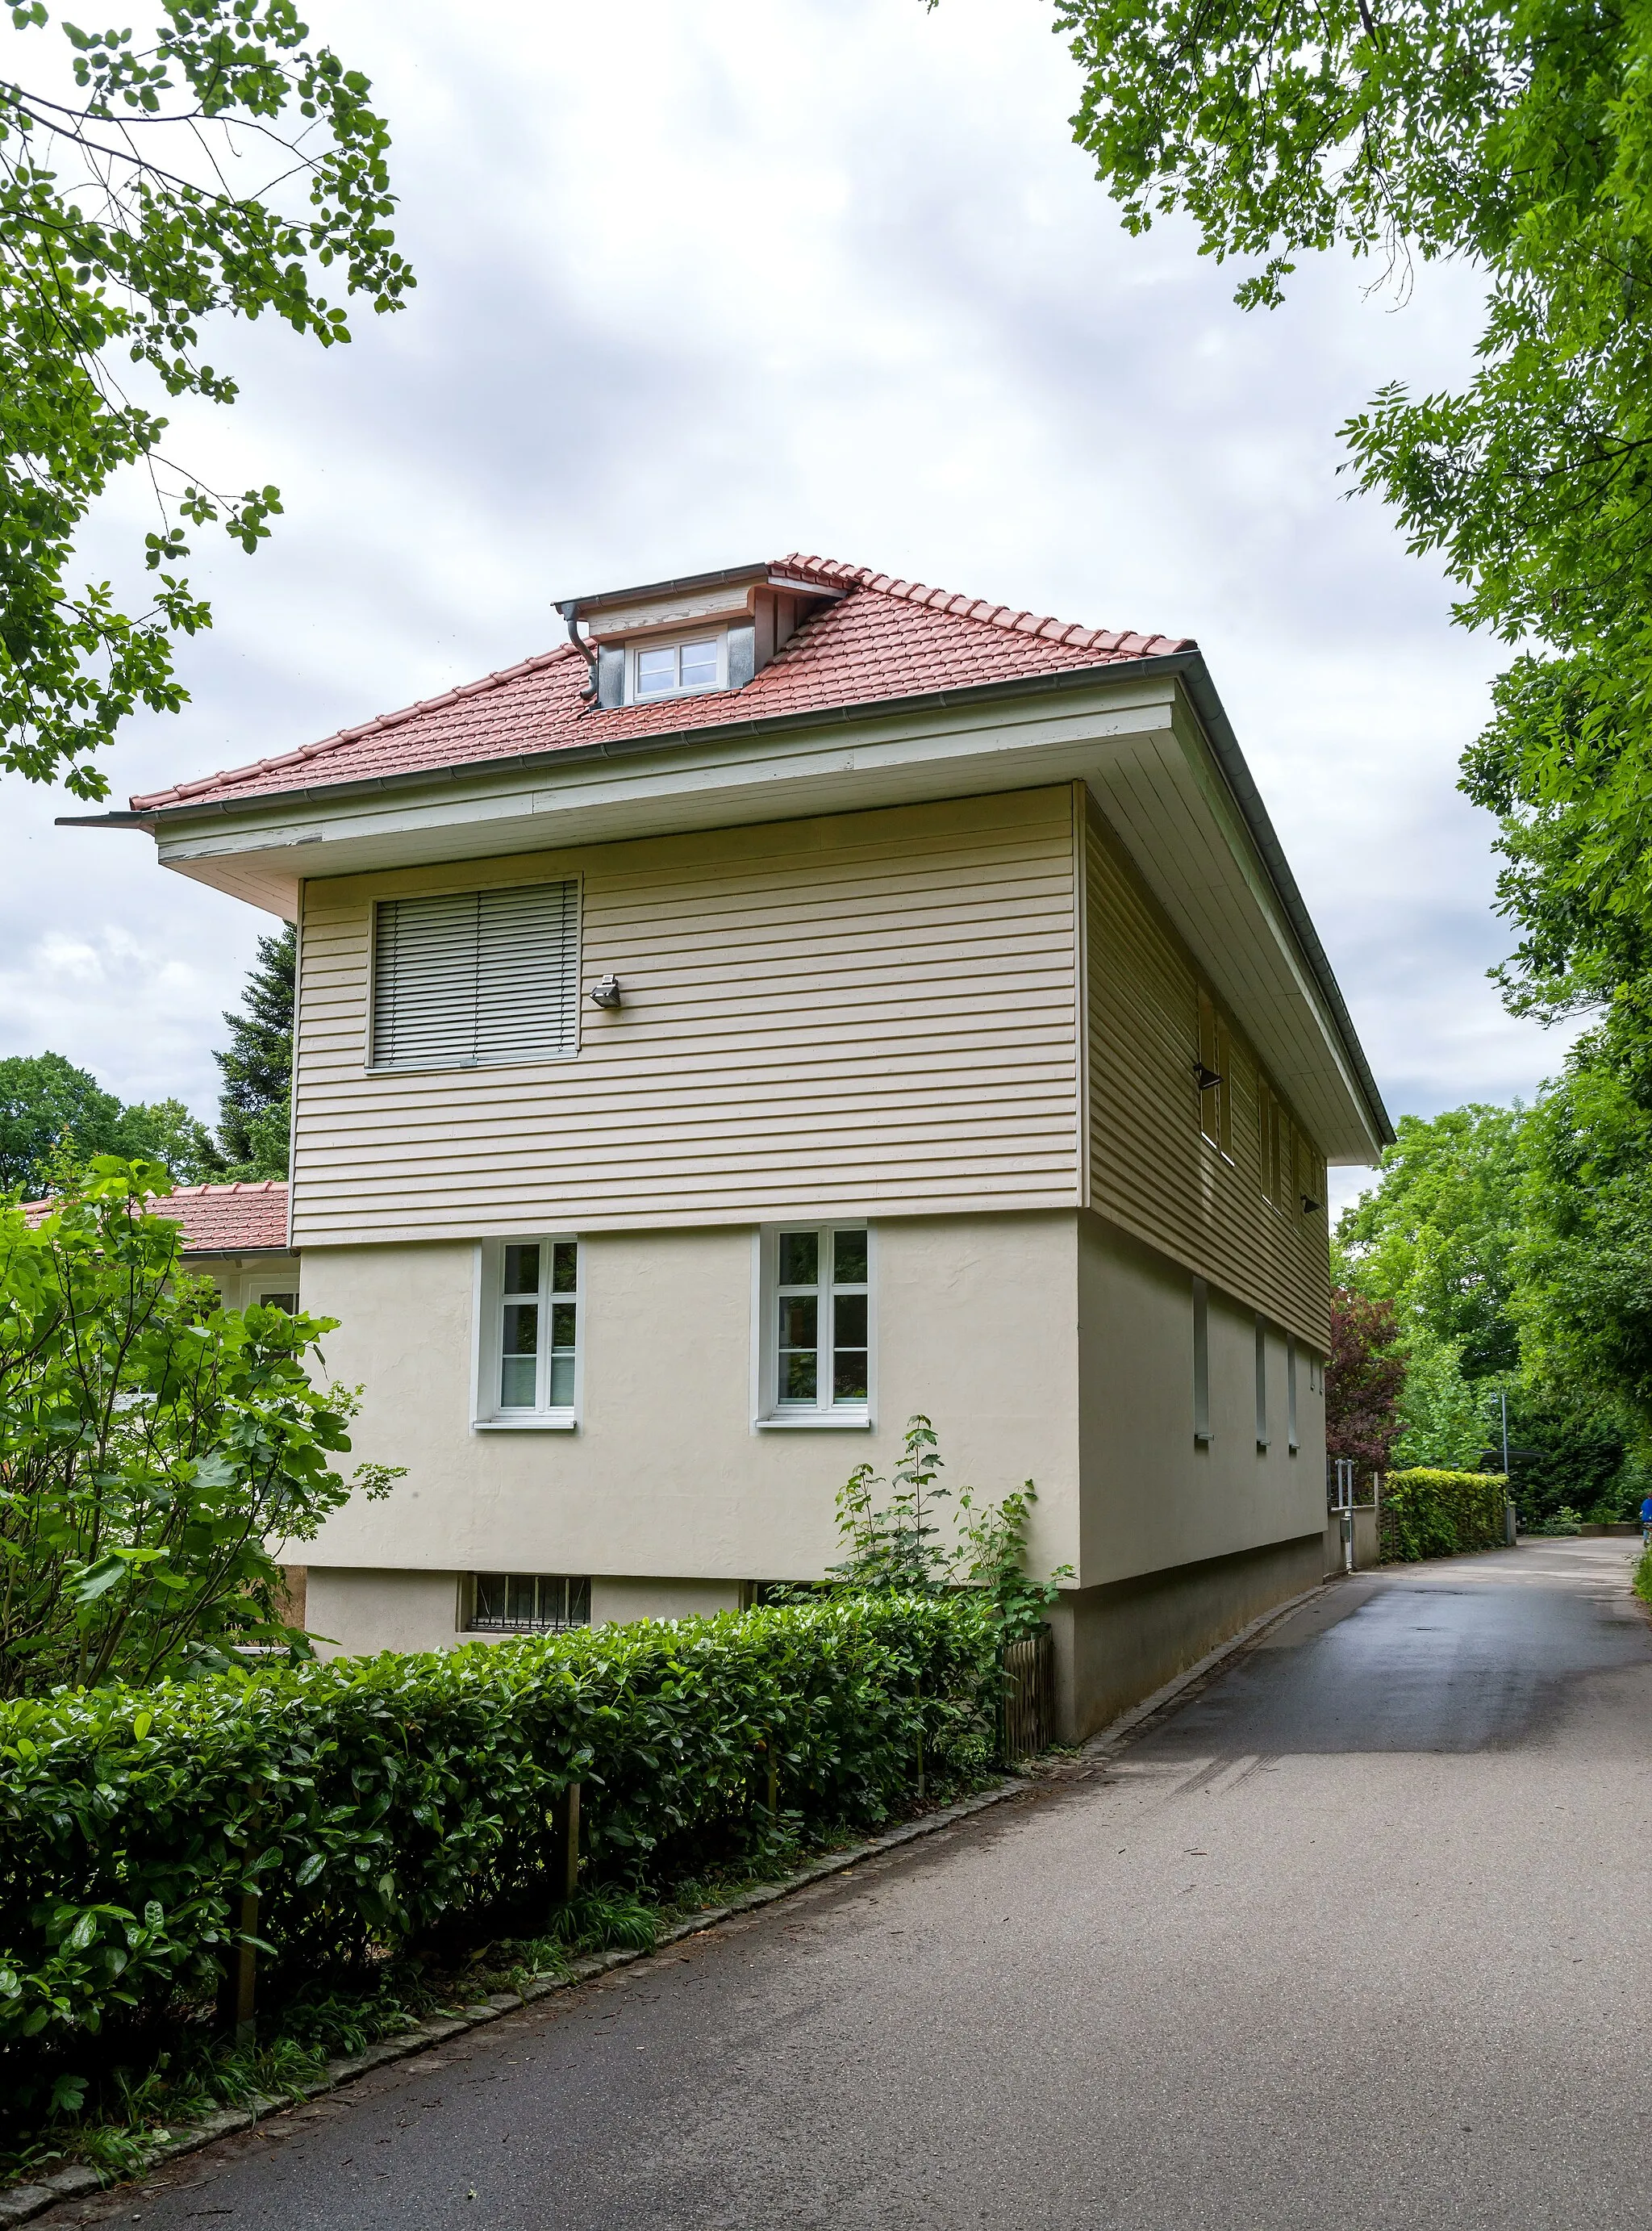 Photo showing: Bilder aus Staufen
Das Gebäude der Alten Messerschmiede